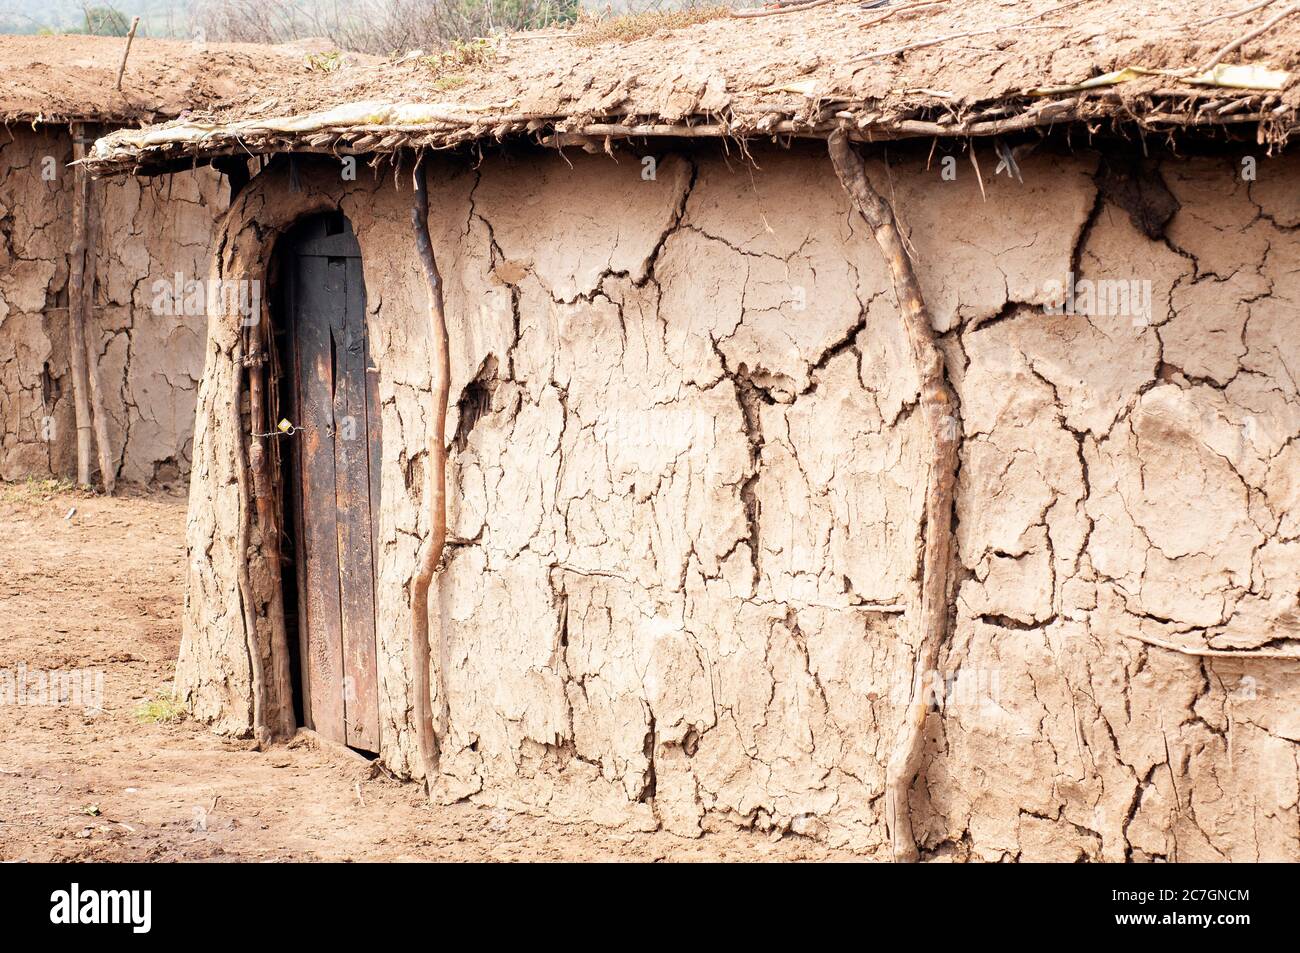 Cabane traditionnelle en argile dans un village de maasai. Réserve nationale de Maasai Mara. Kenya. Afrique. Banque D'Images